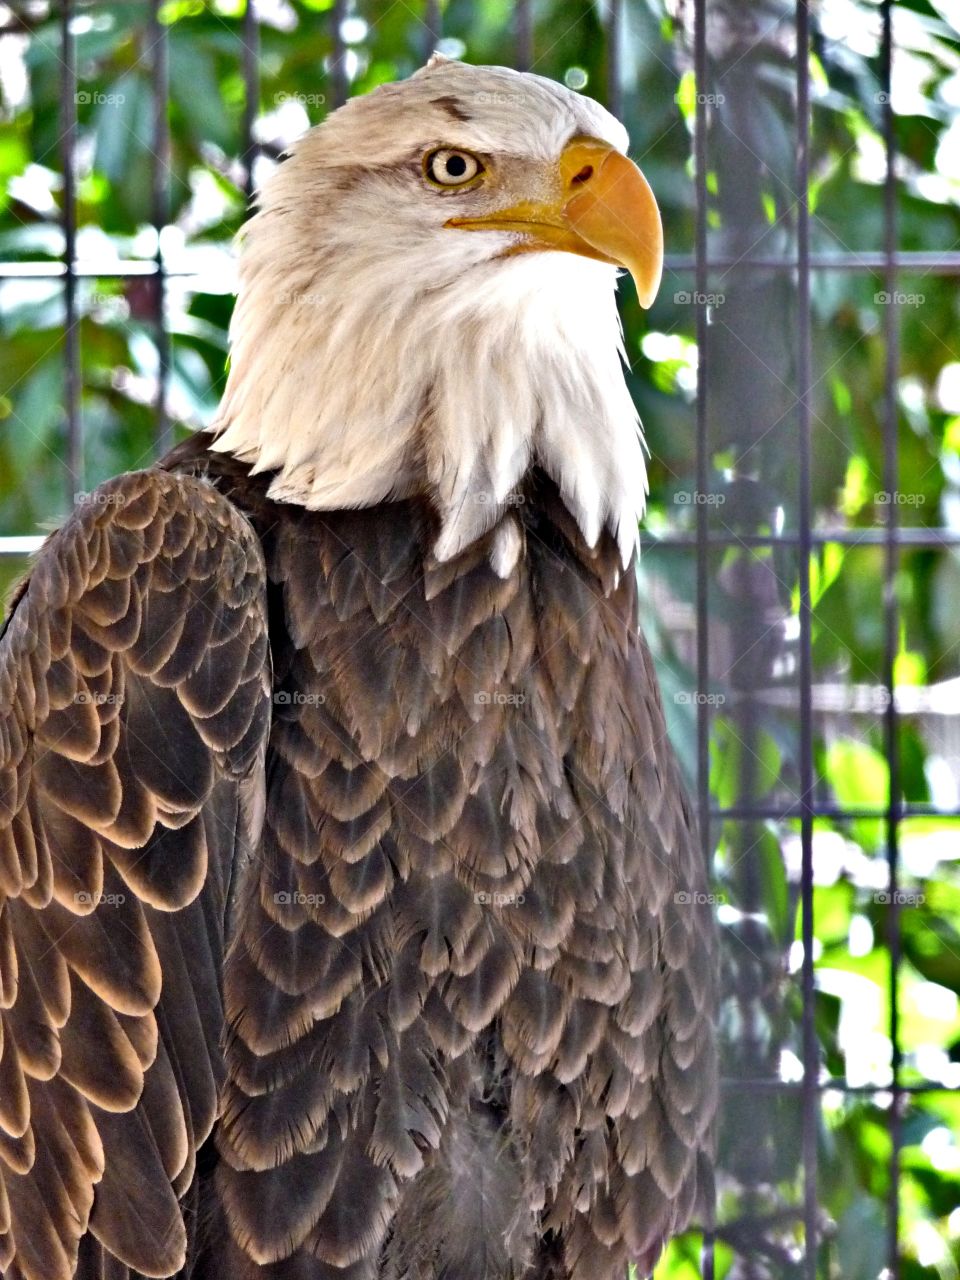 Georgia Eagle